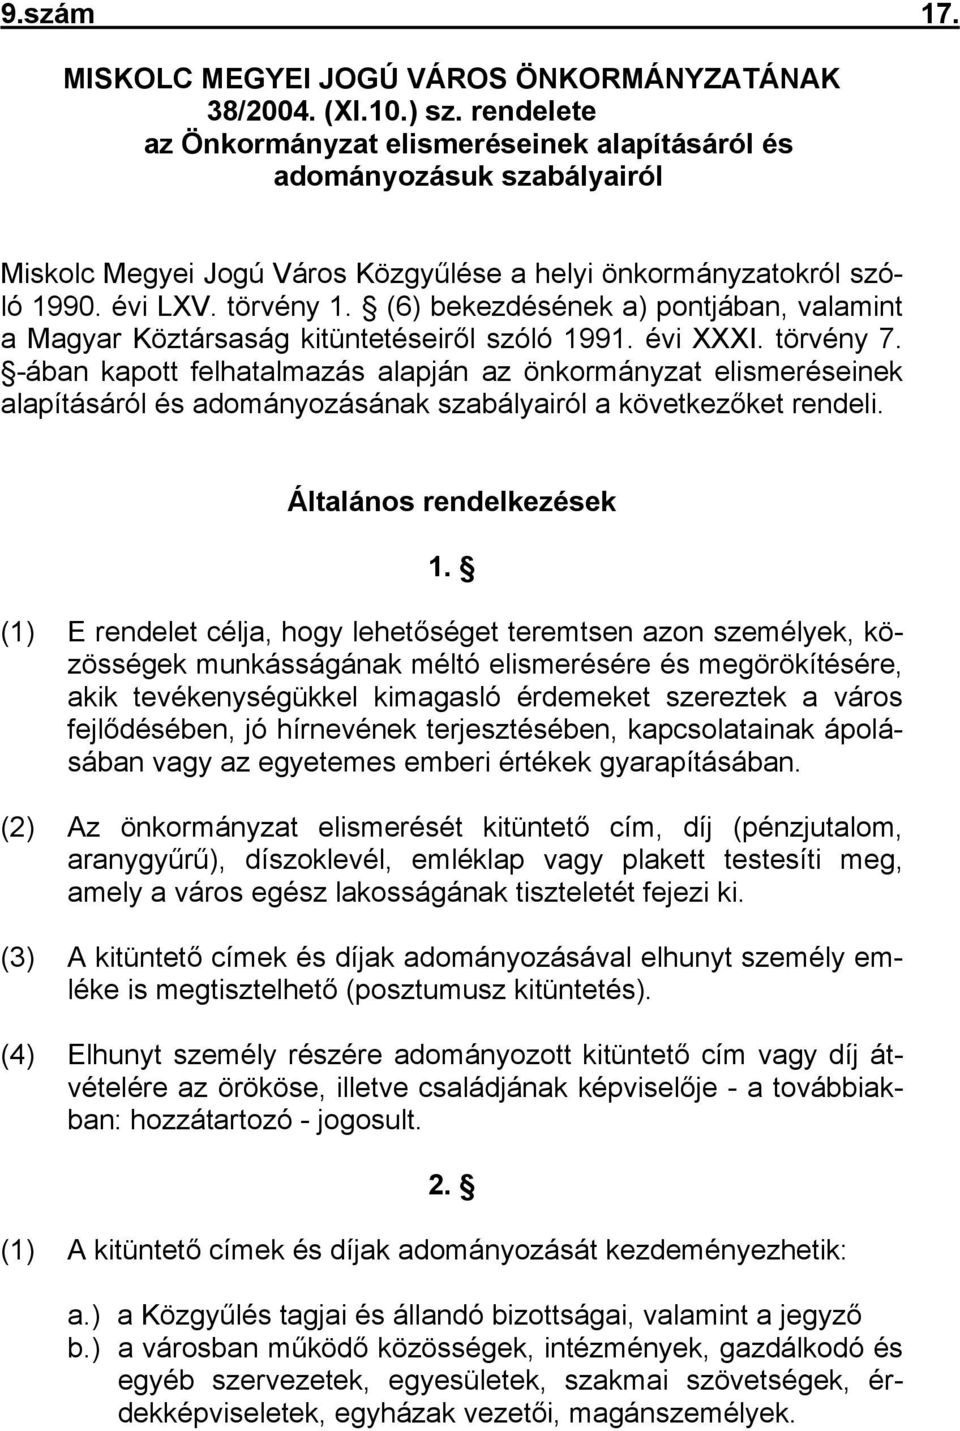 (6) bekezdésének a) pontjában, valamint a Magyar Köztársaság kitüntetéseiről szóló 1991. évi XXXI. törvény 7.